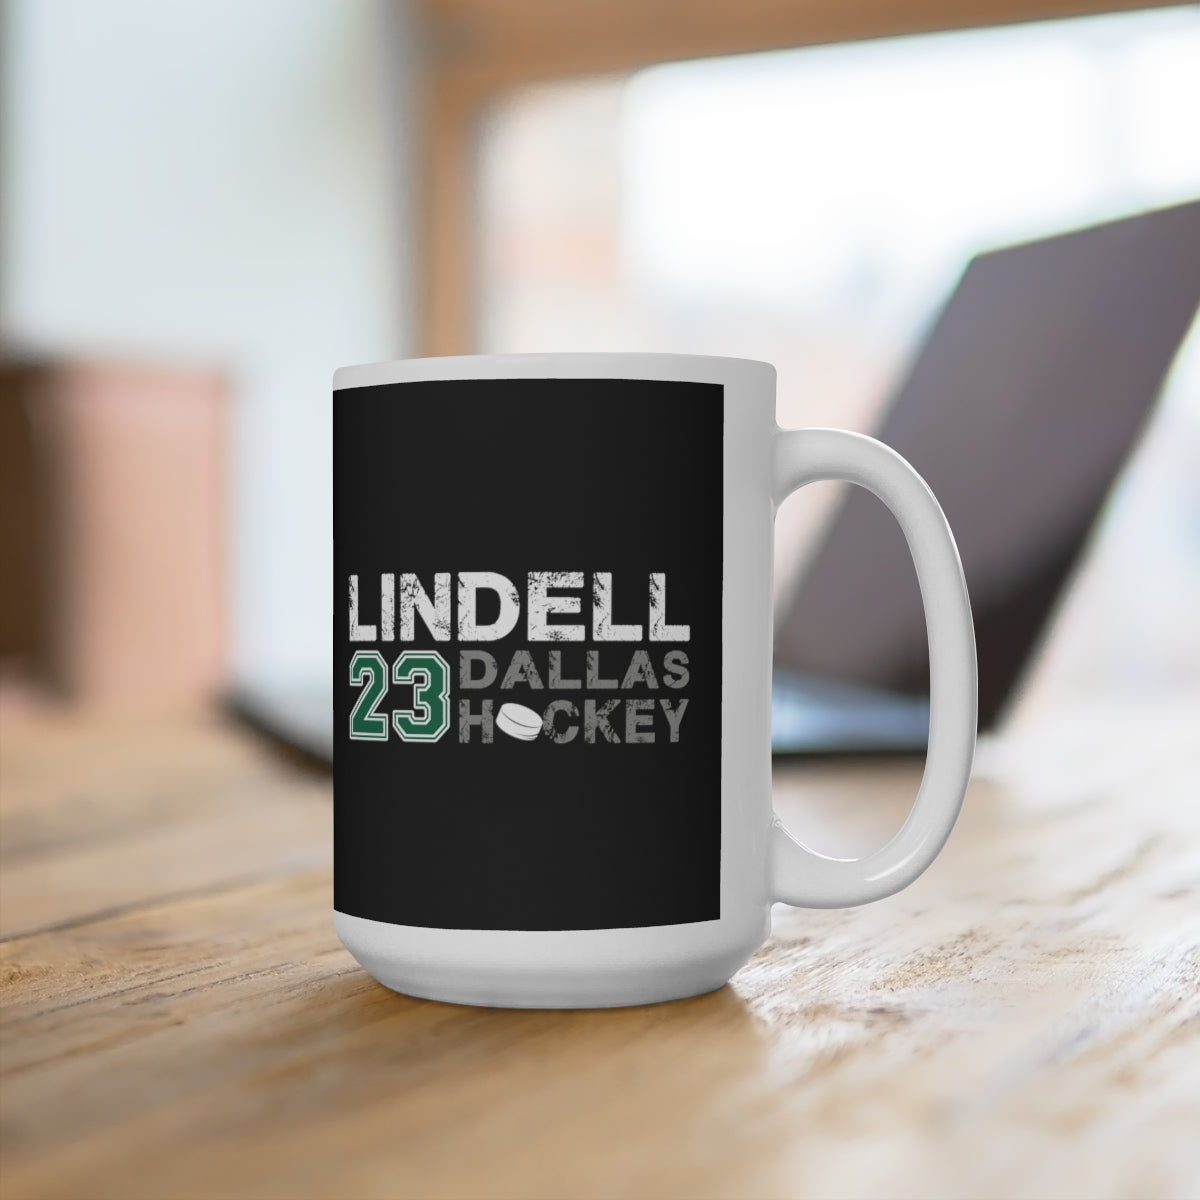 Lindell 23 Dallas Hockey Ceramic Coffee Mug In Black, 15oz